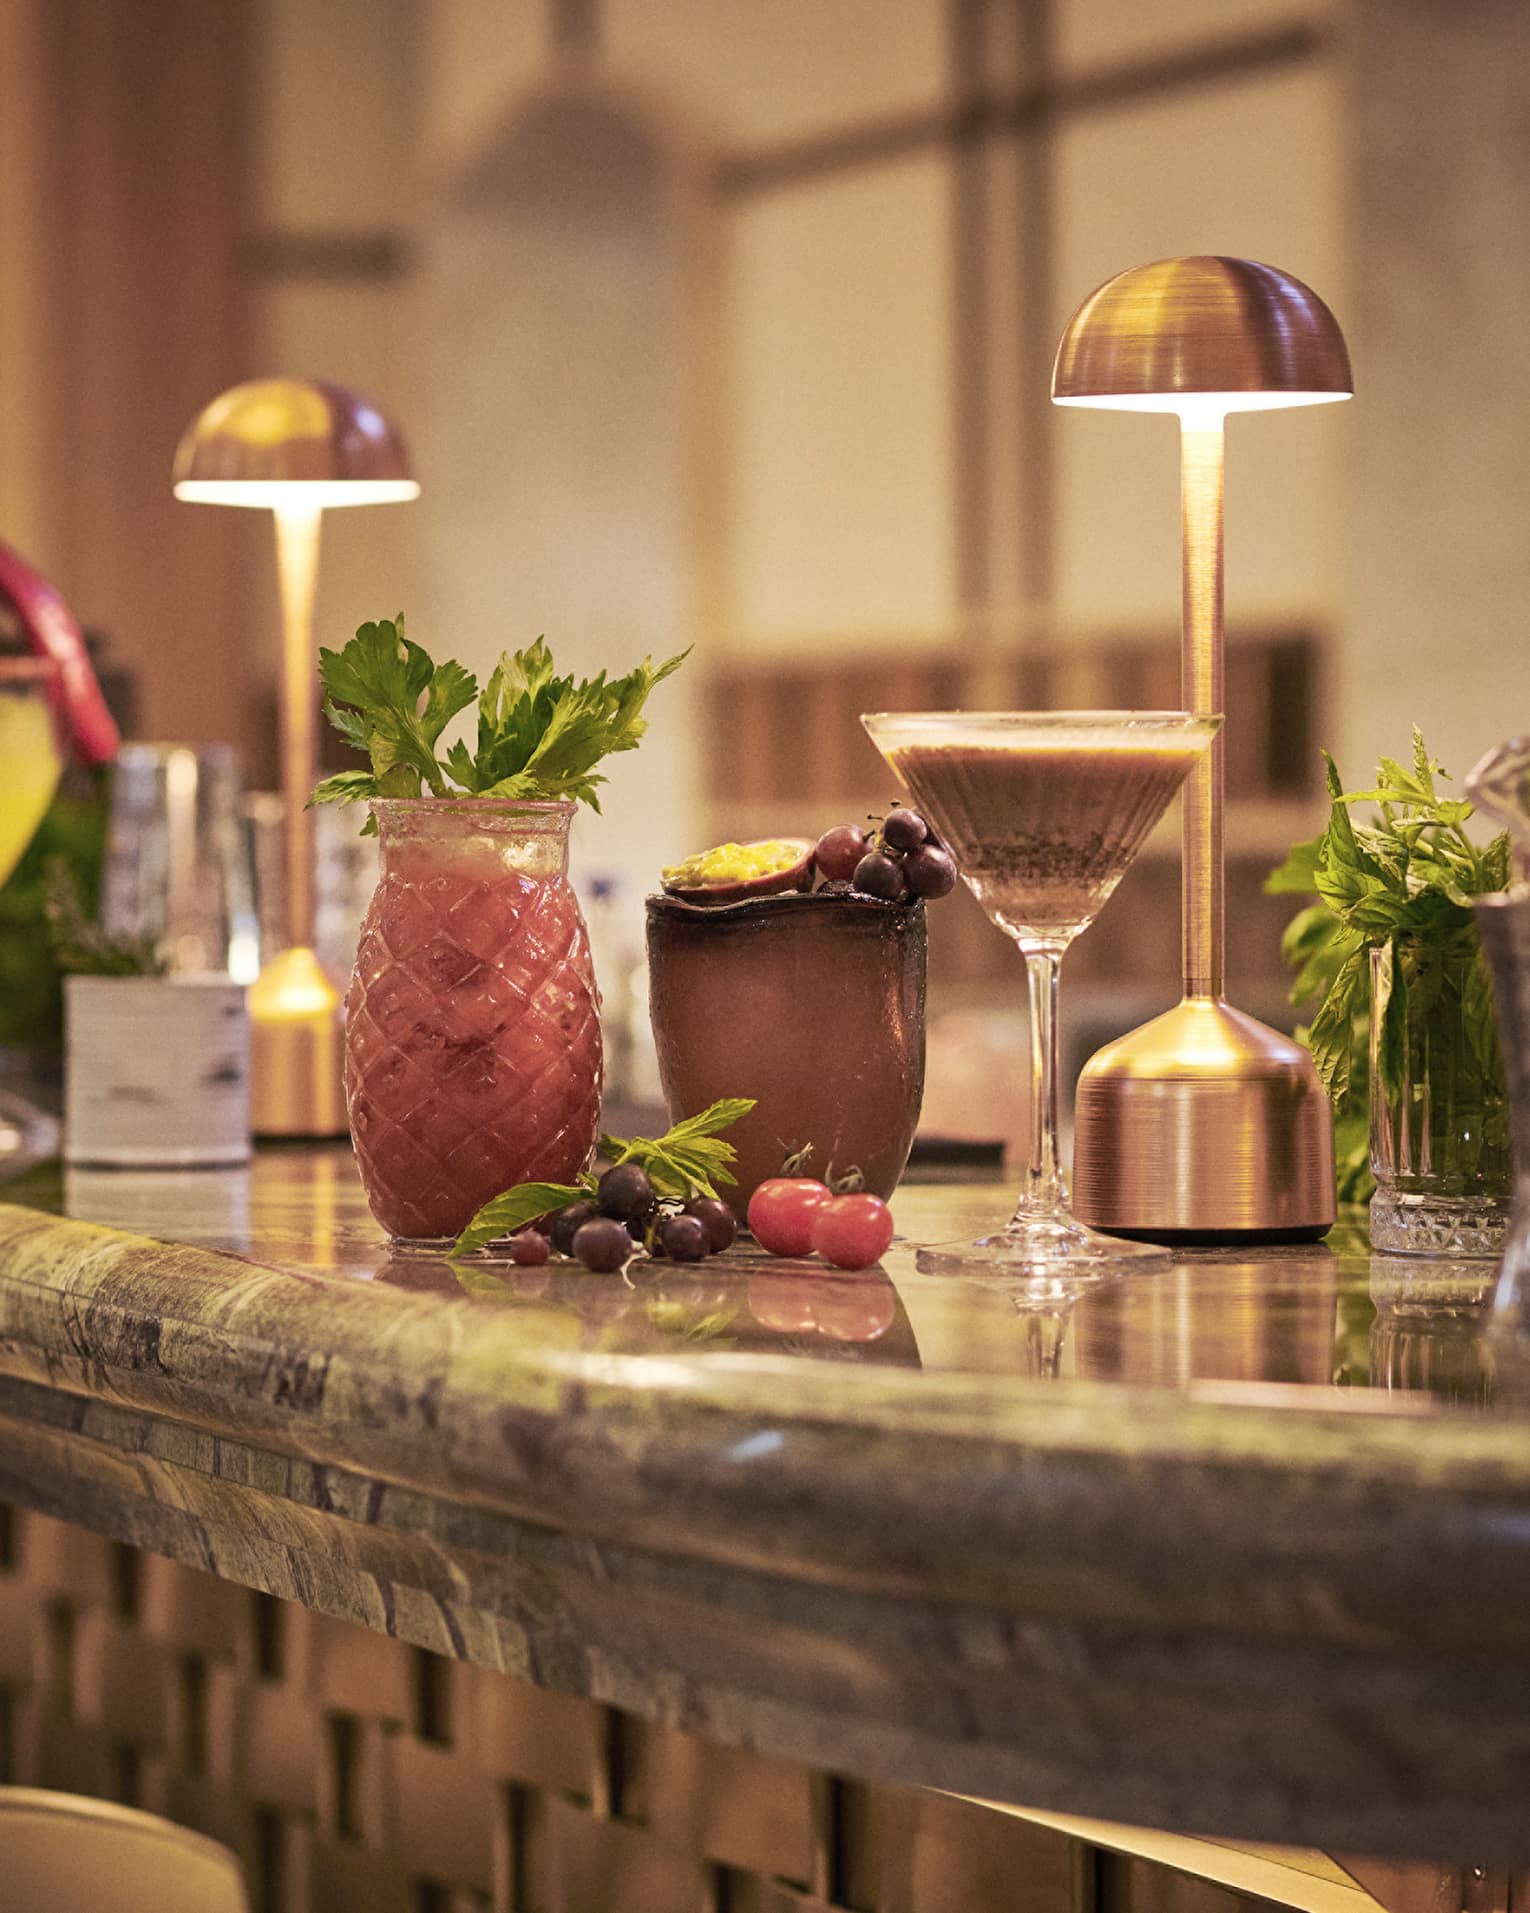 Cocktails in various glassware lined up on bar under copper desk lights